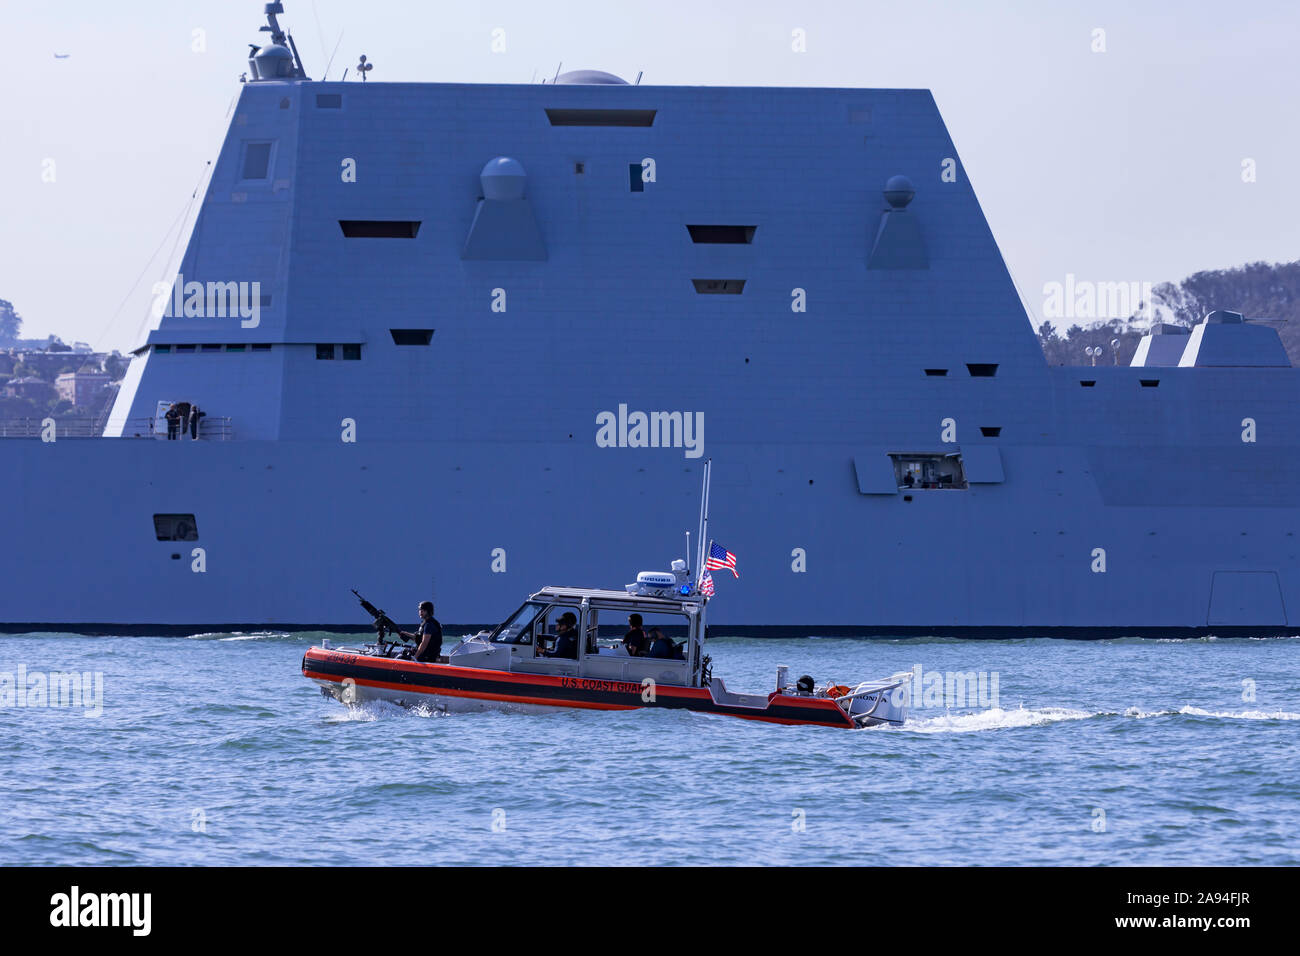 La Marina degli Stati Uniti missile destroyer USS Zumwalt (DDG-1000) è scortato da una guardia costiera MSST come si entra nella Baia di San Francisco durante la 201 Foto Stock